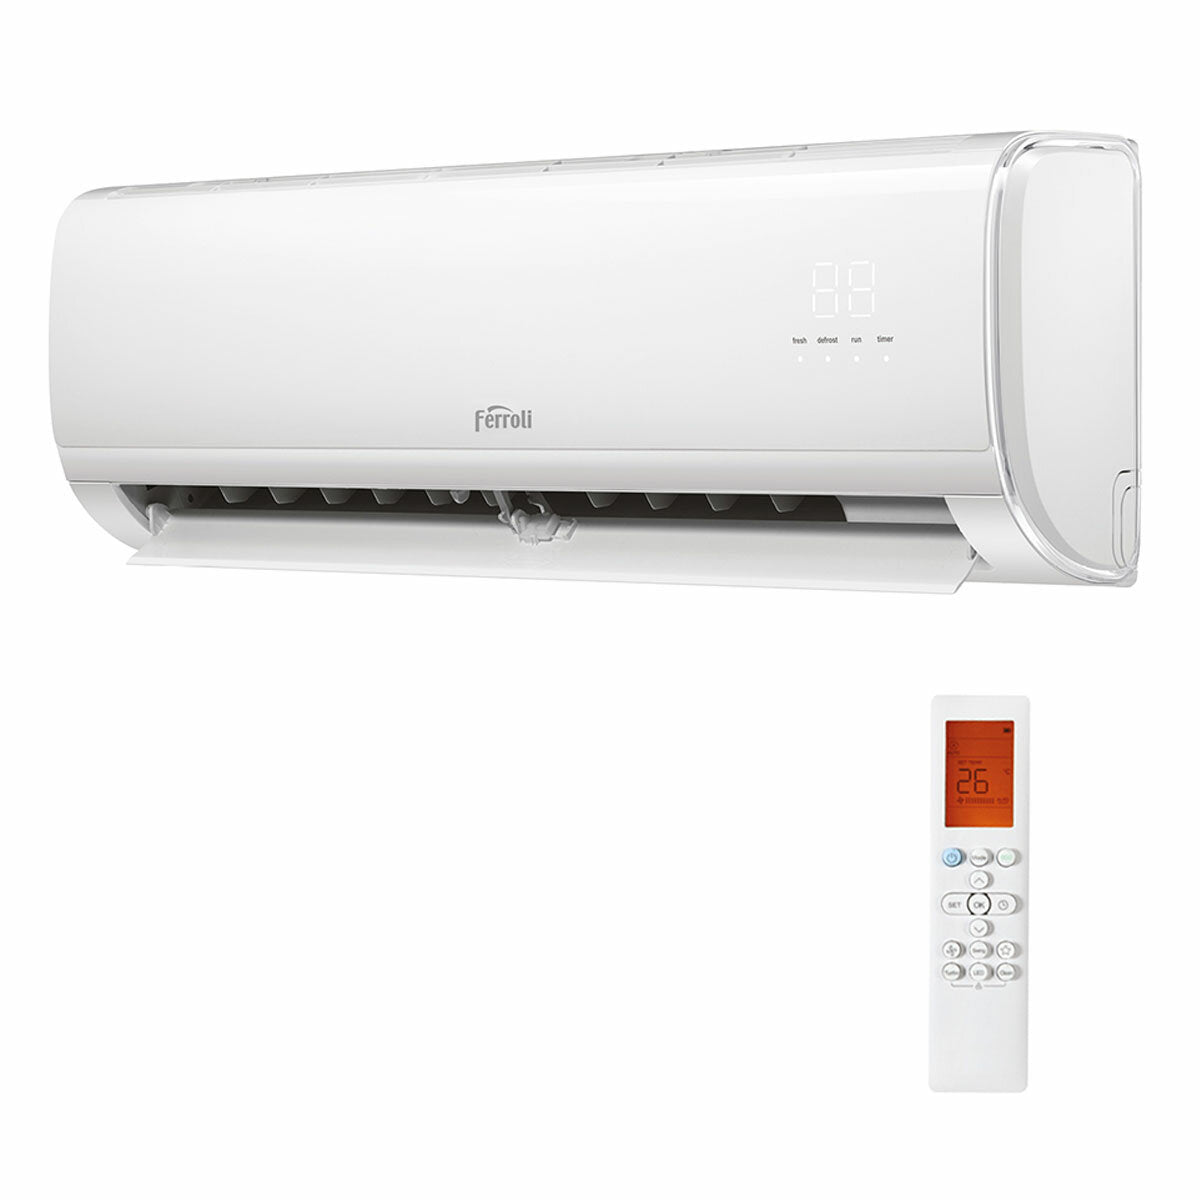 Ferroli Giada trial split air conditioner 12000+12000+12000 BTU inverter A+ wifi outdoor unit 7.9 kW